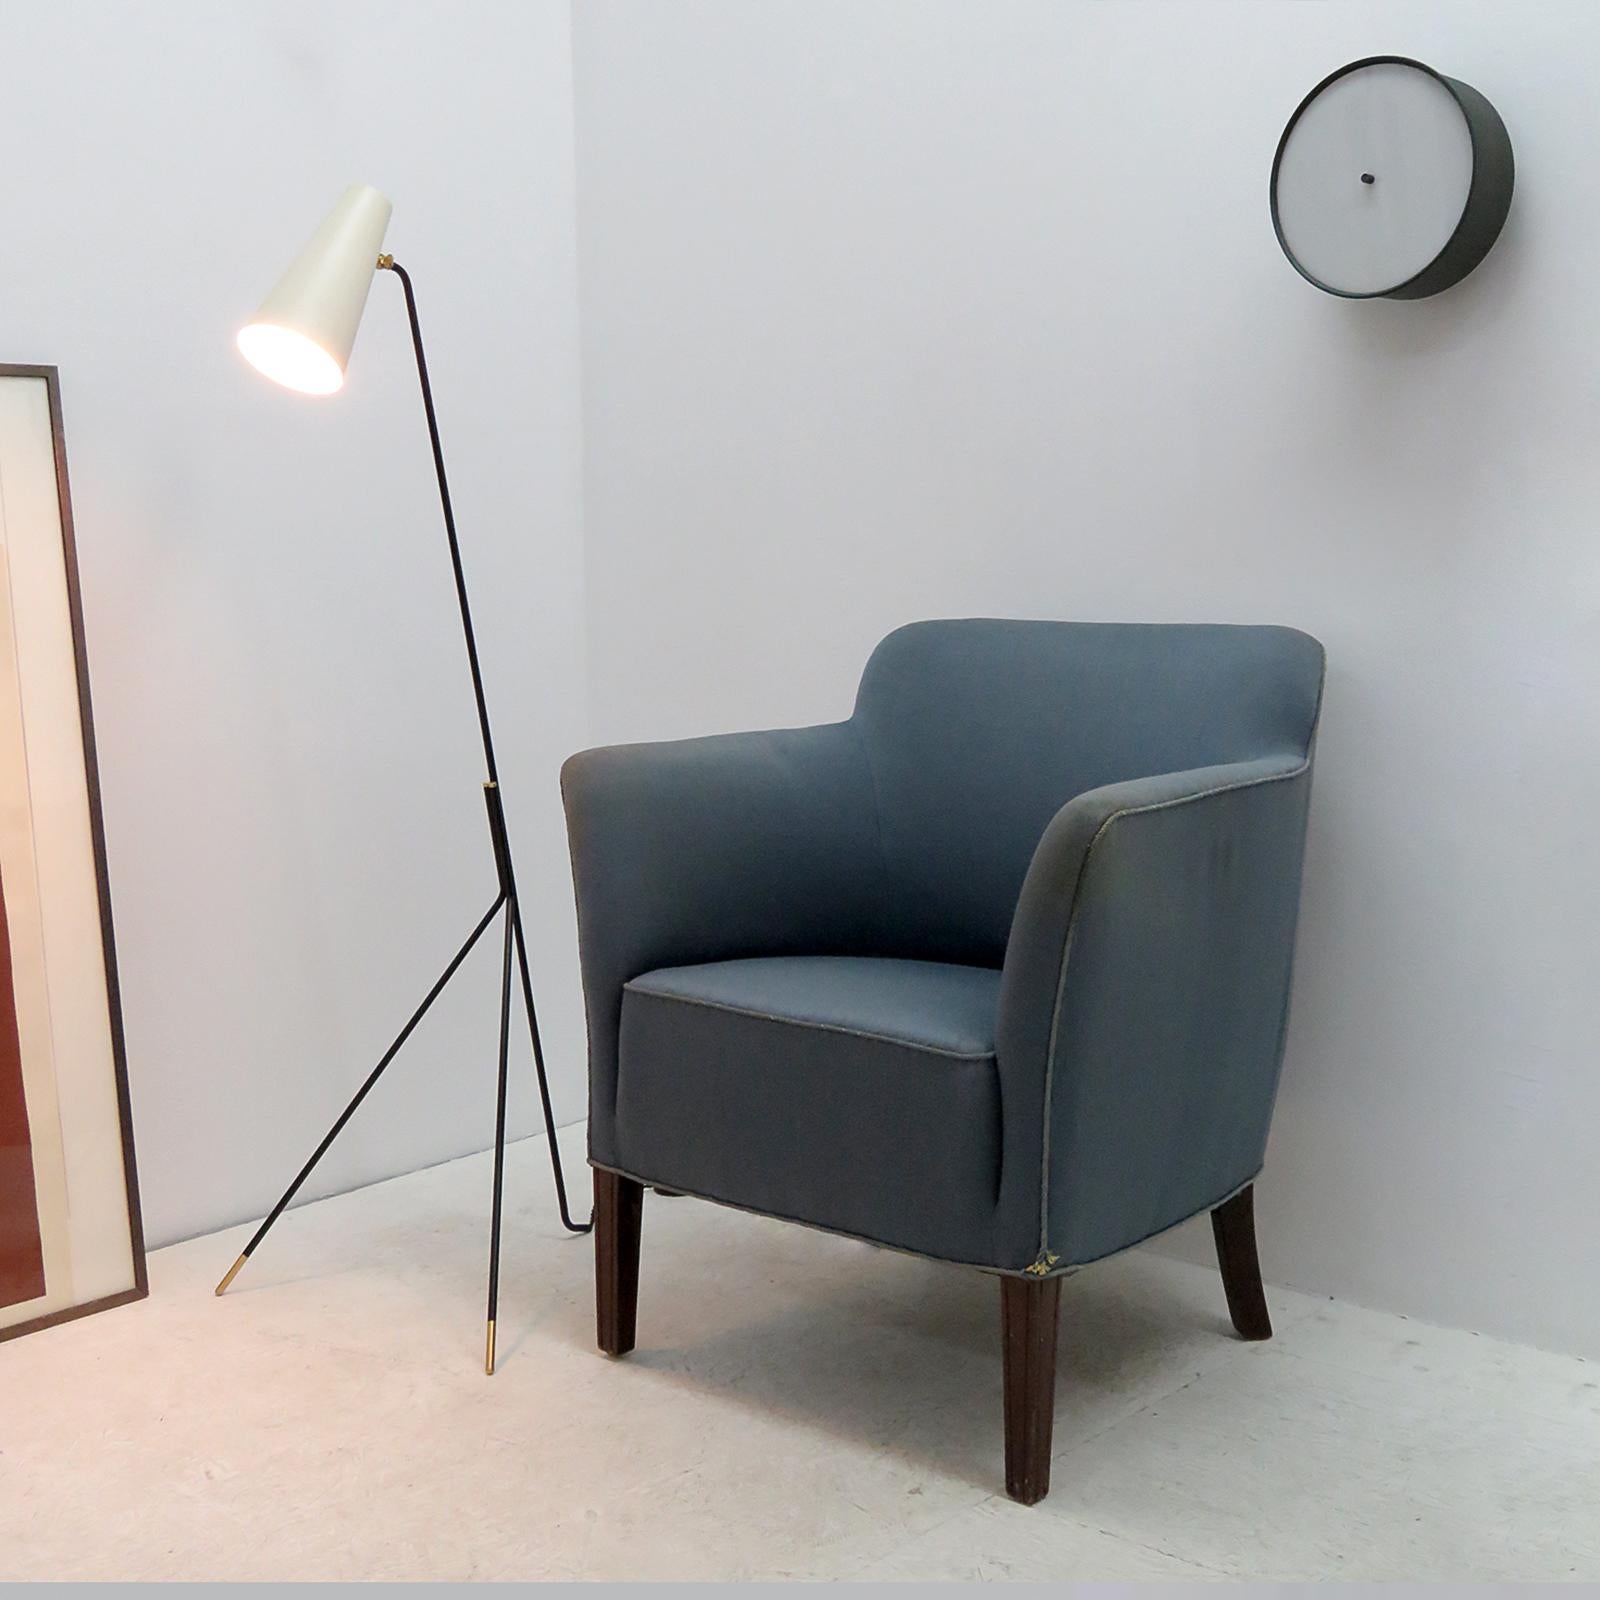 Metal Minimalist Floor Lamp 'Apex' by Gallery L7